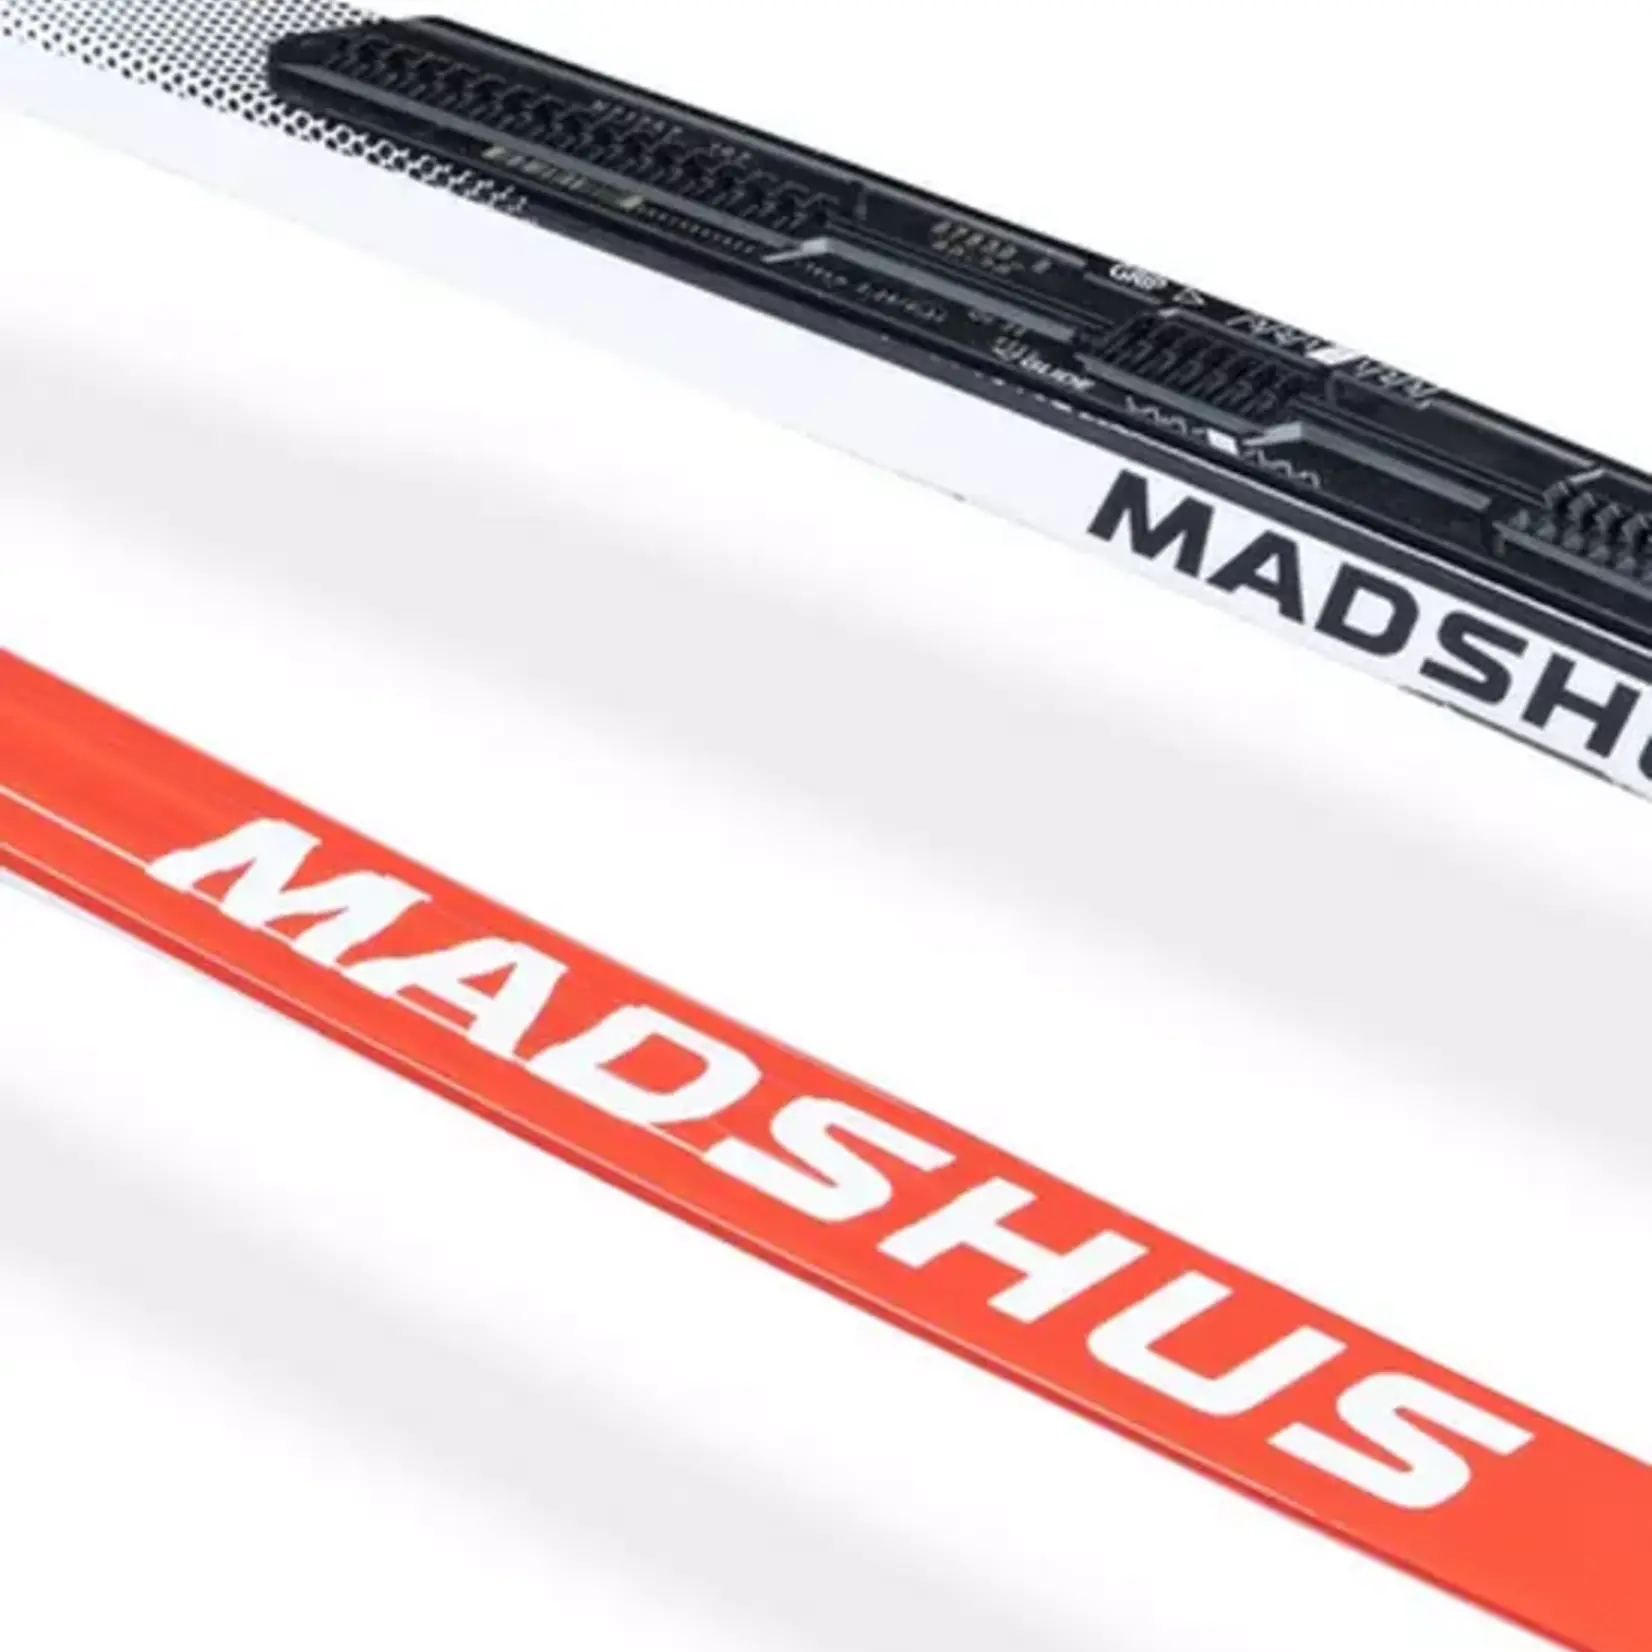 Madshus Madshus race speed classic skin